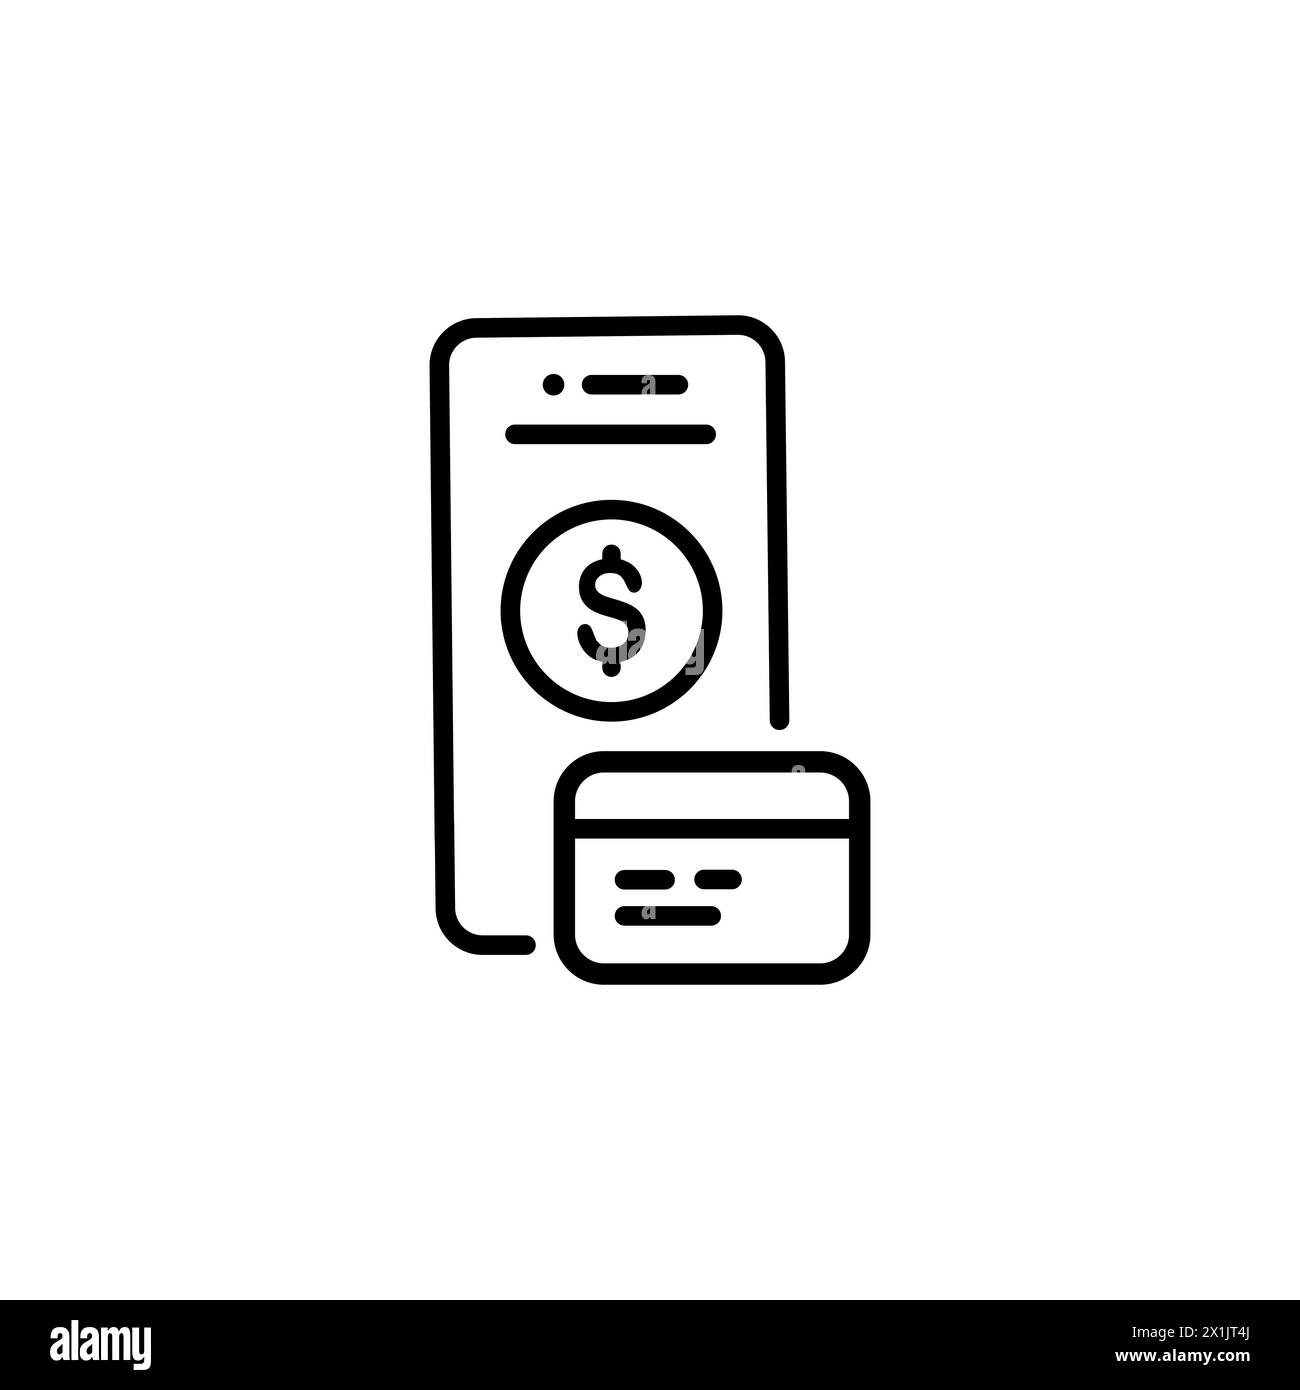 Symbol für die mobile Zahlungsposition. Smartphone, Kreditkarte, Überweisung. E-Commerce-Konzept. Kann für Themen wie Online-Kauf, Banking, Transaktion verwendet werden Stock Vektor